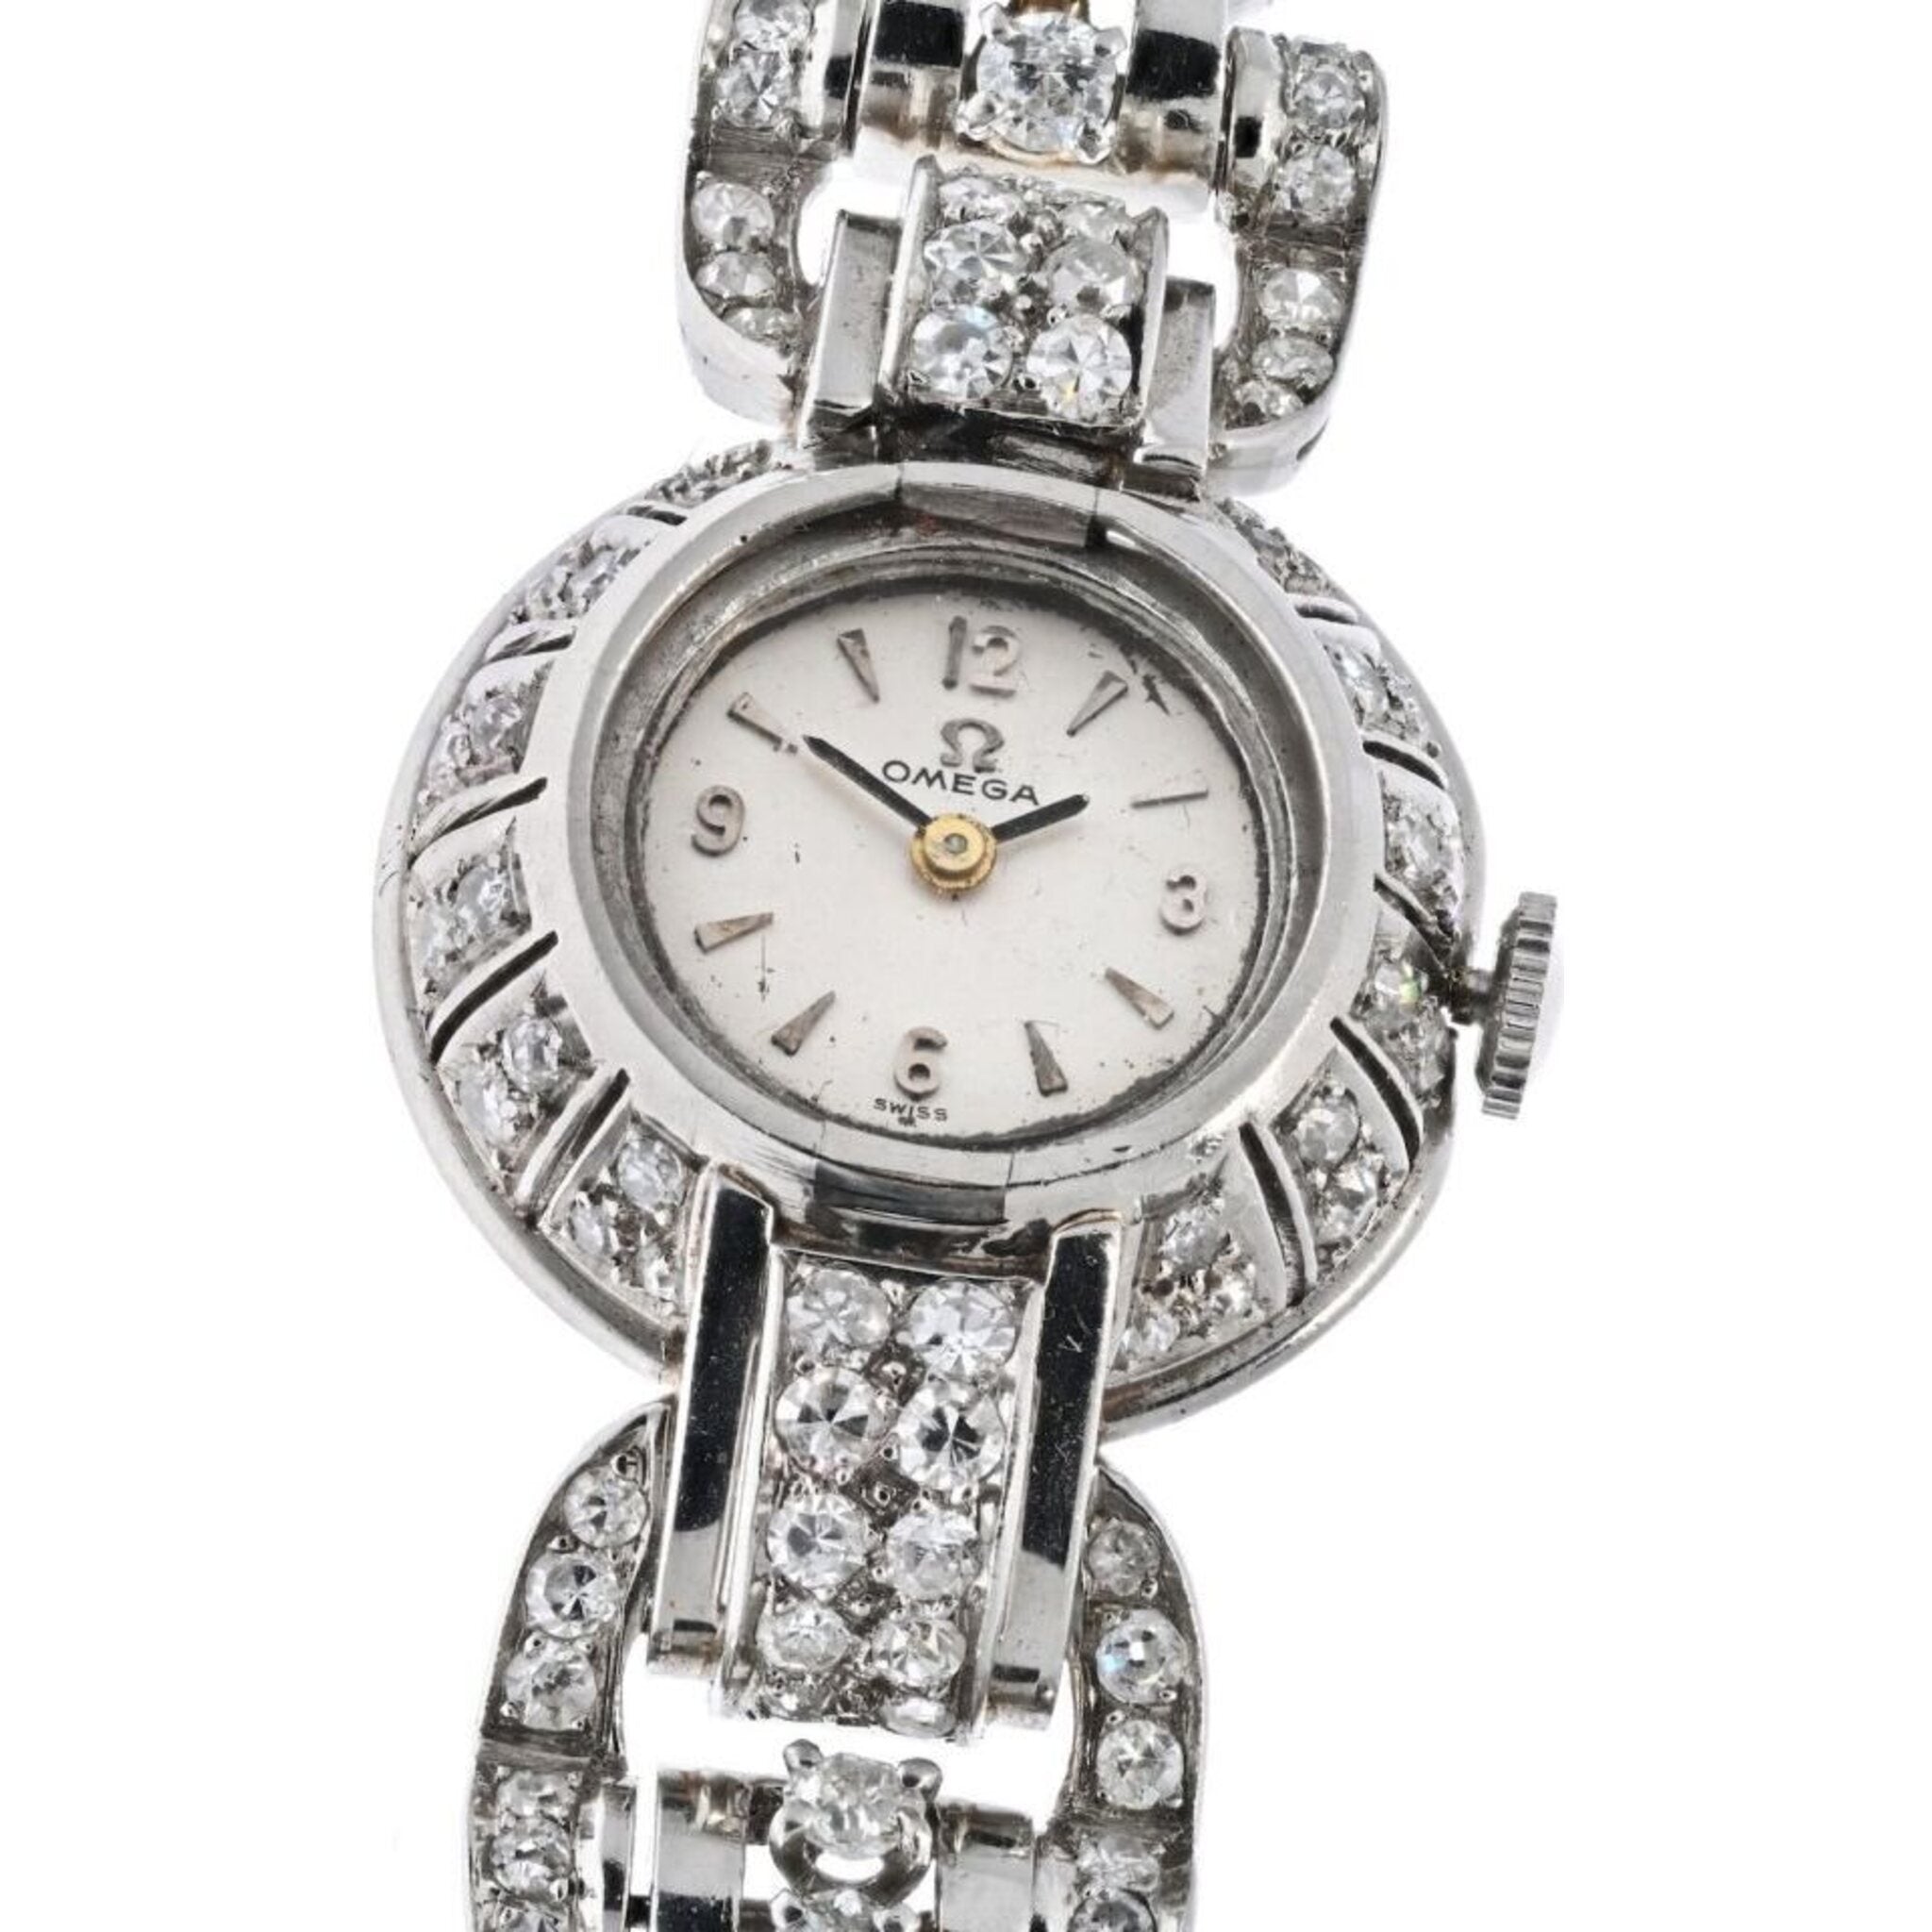 12 Carat Old Cut Diamond Watch